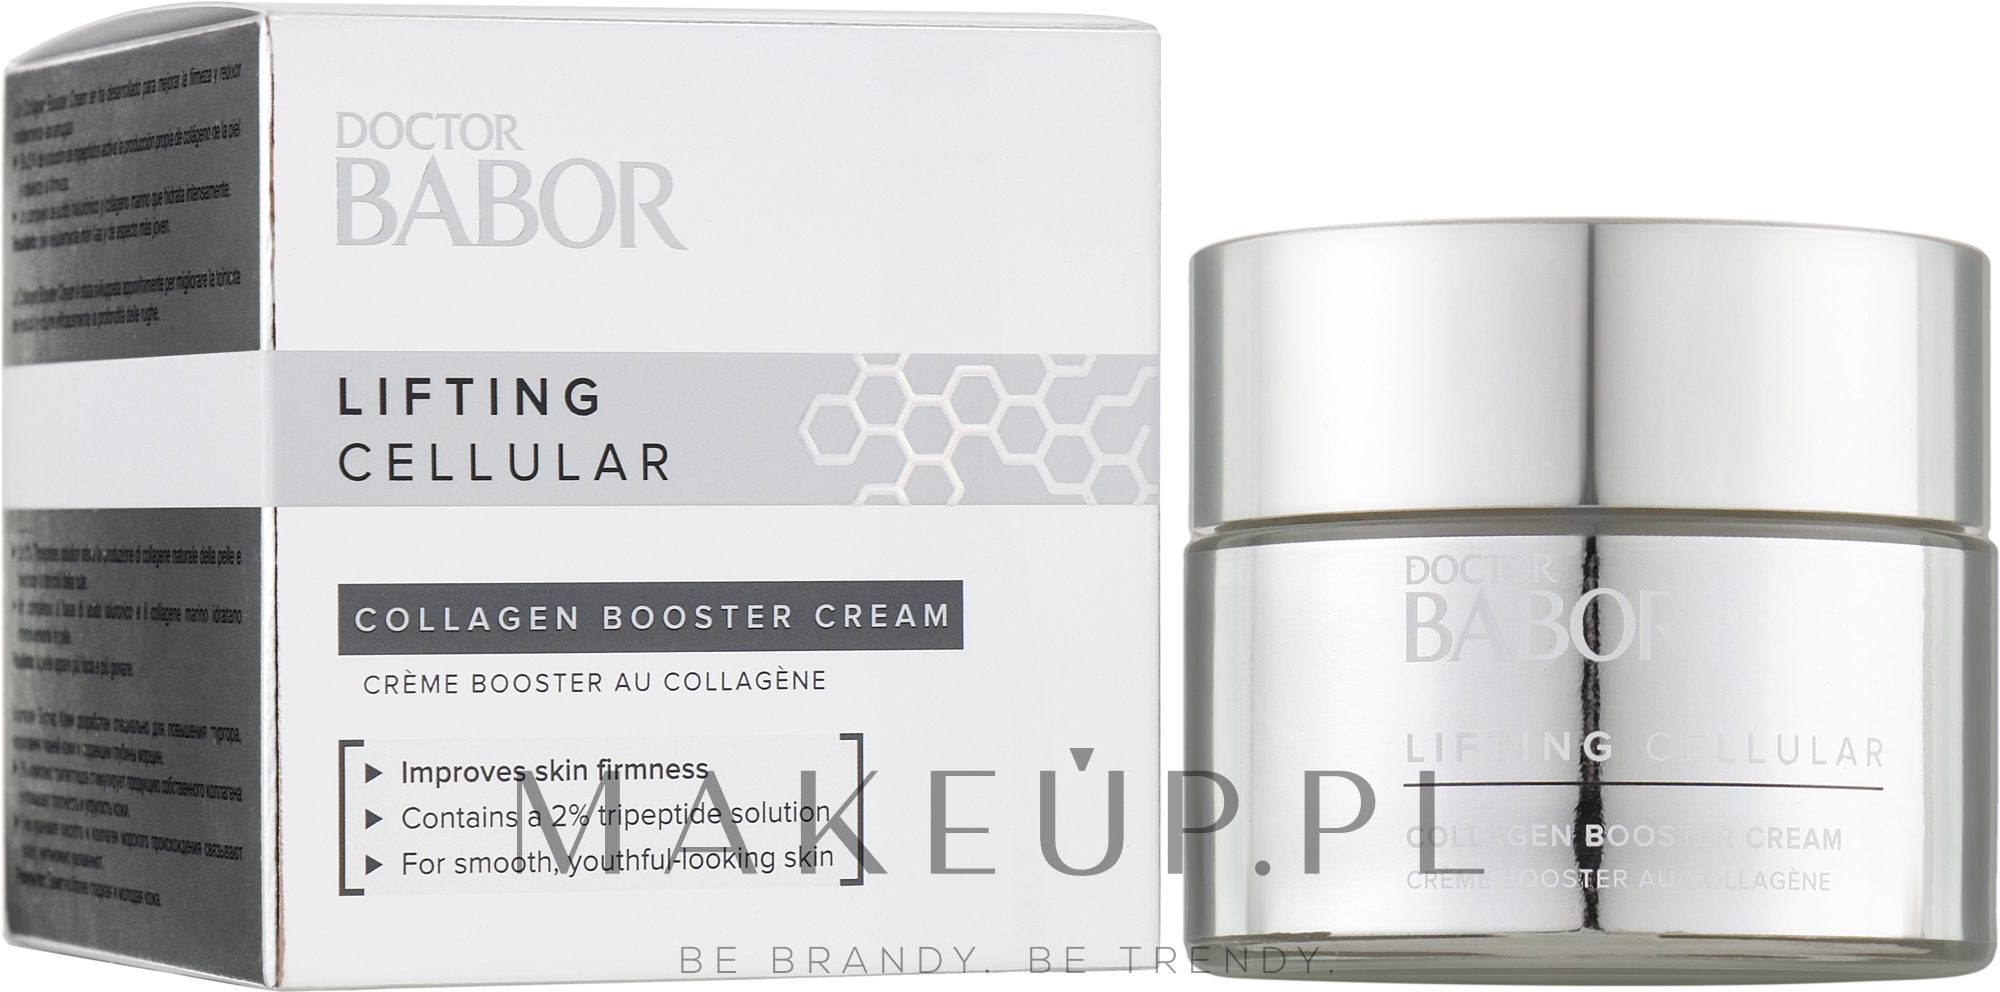 Krem liftingujący do skóry twarzy z kolagenem - Babor Doctor Babor Lifting Cellular Collagen Booster Cream  — Zdjęcie 50 ml